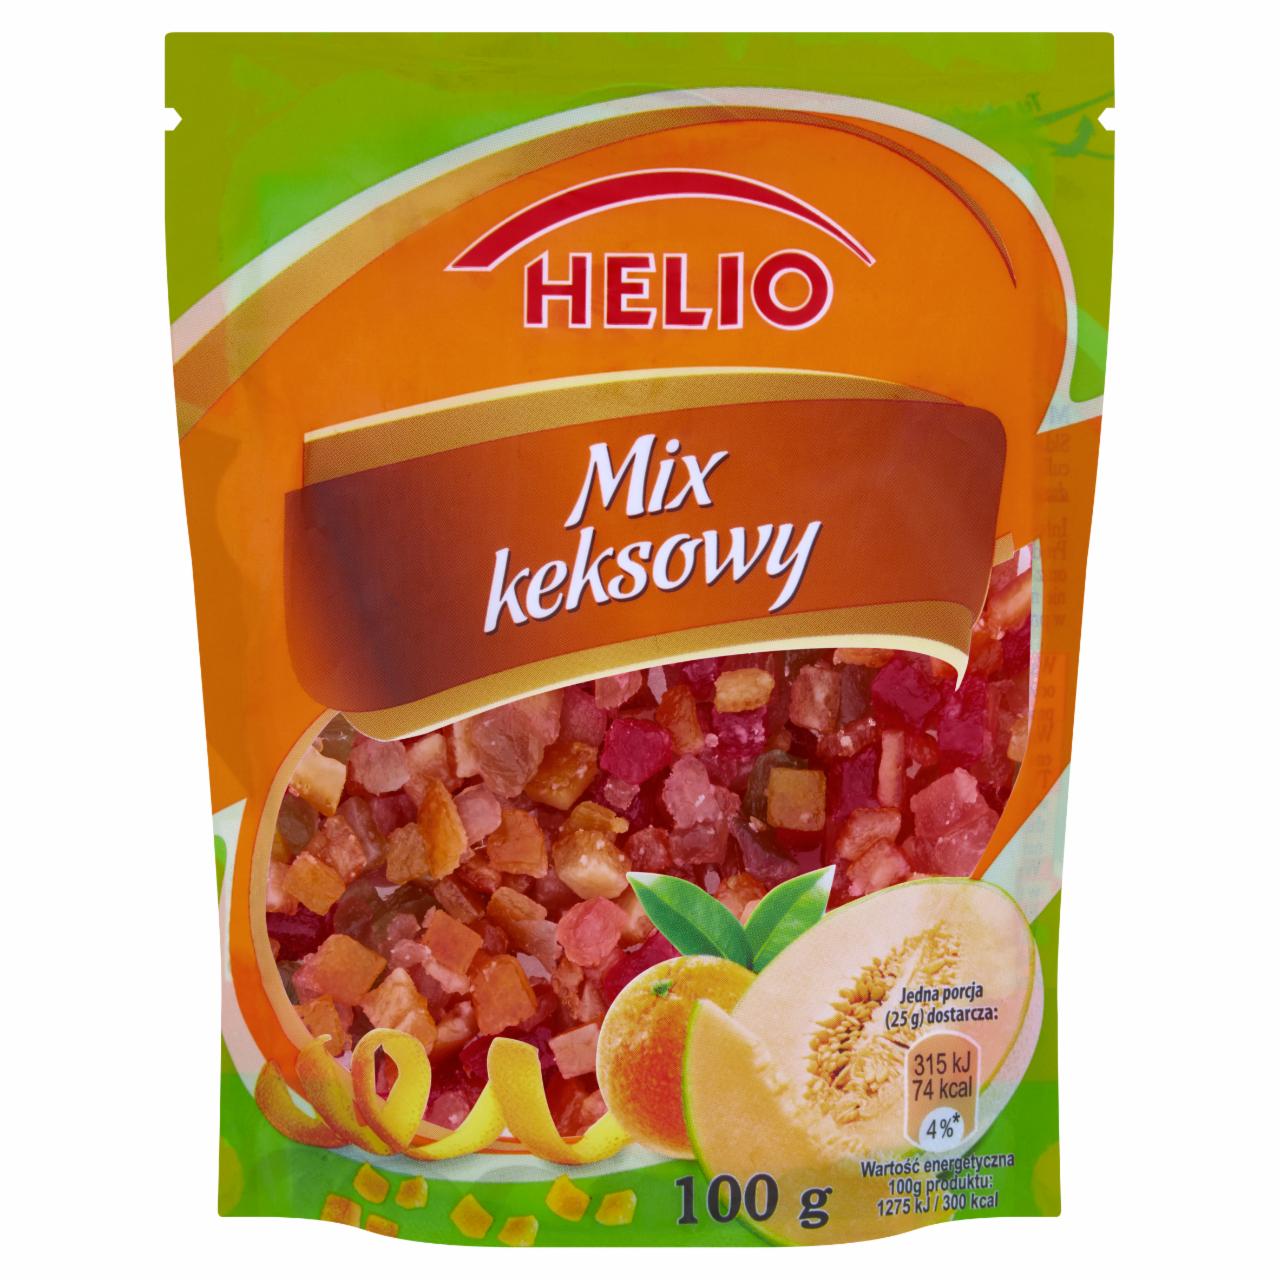 Zdjęcia - Helio Mix keksowy 100 g